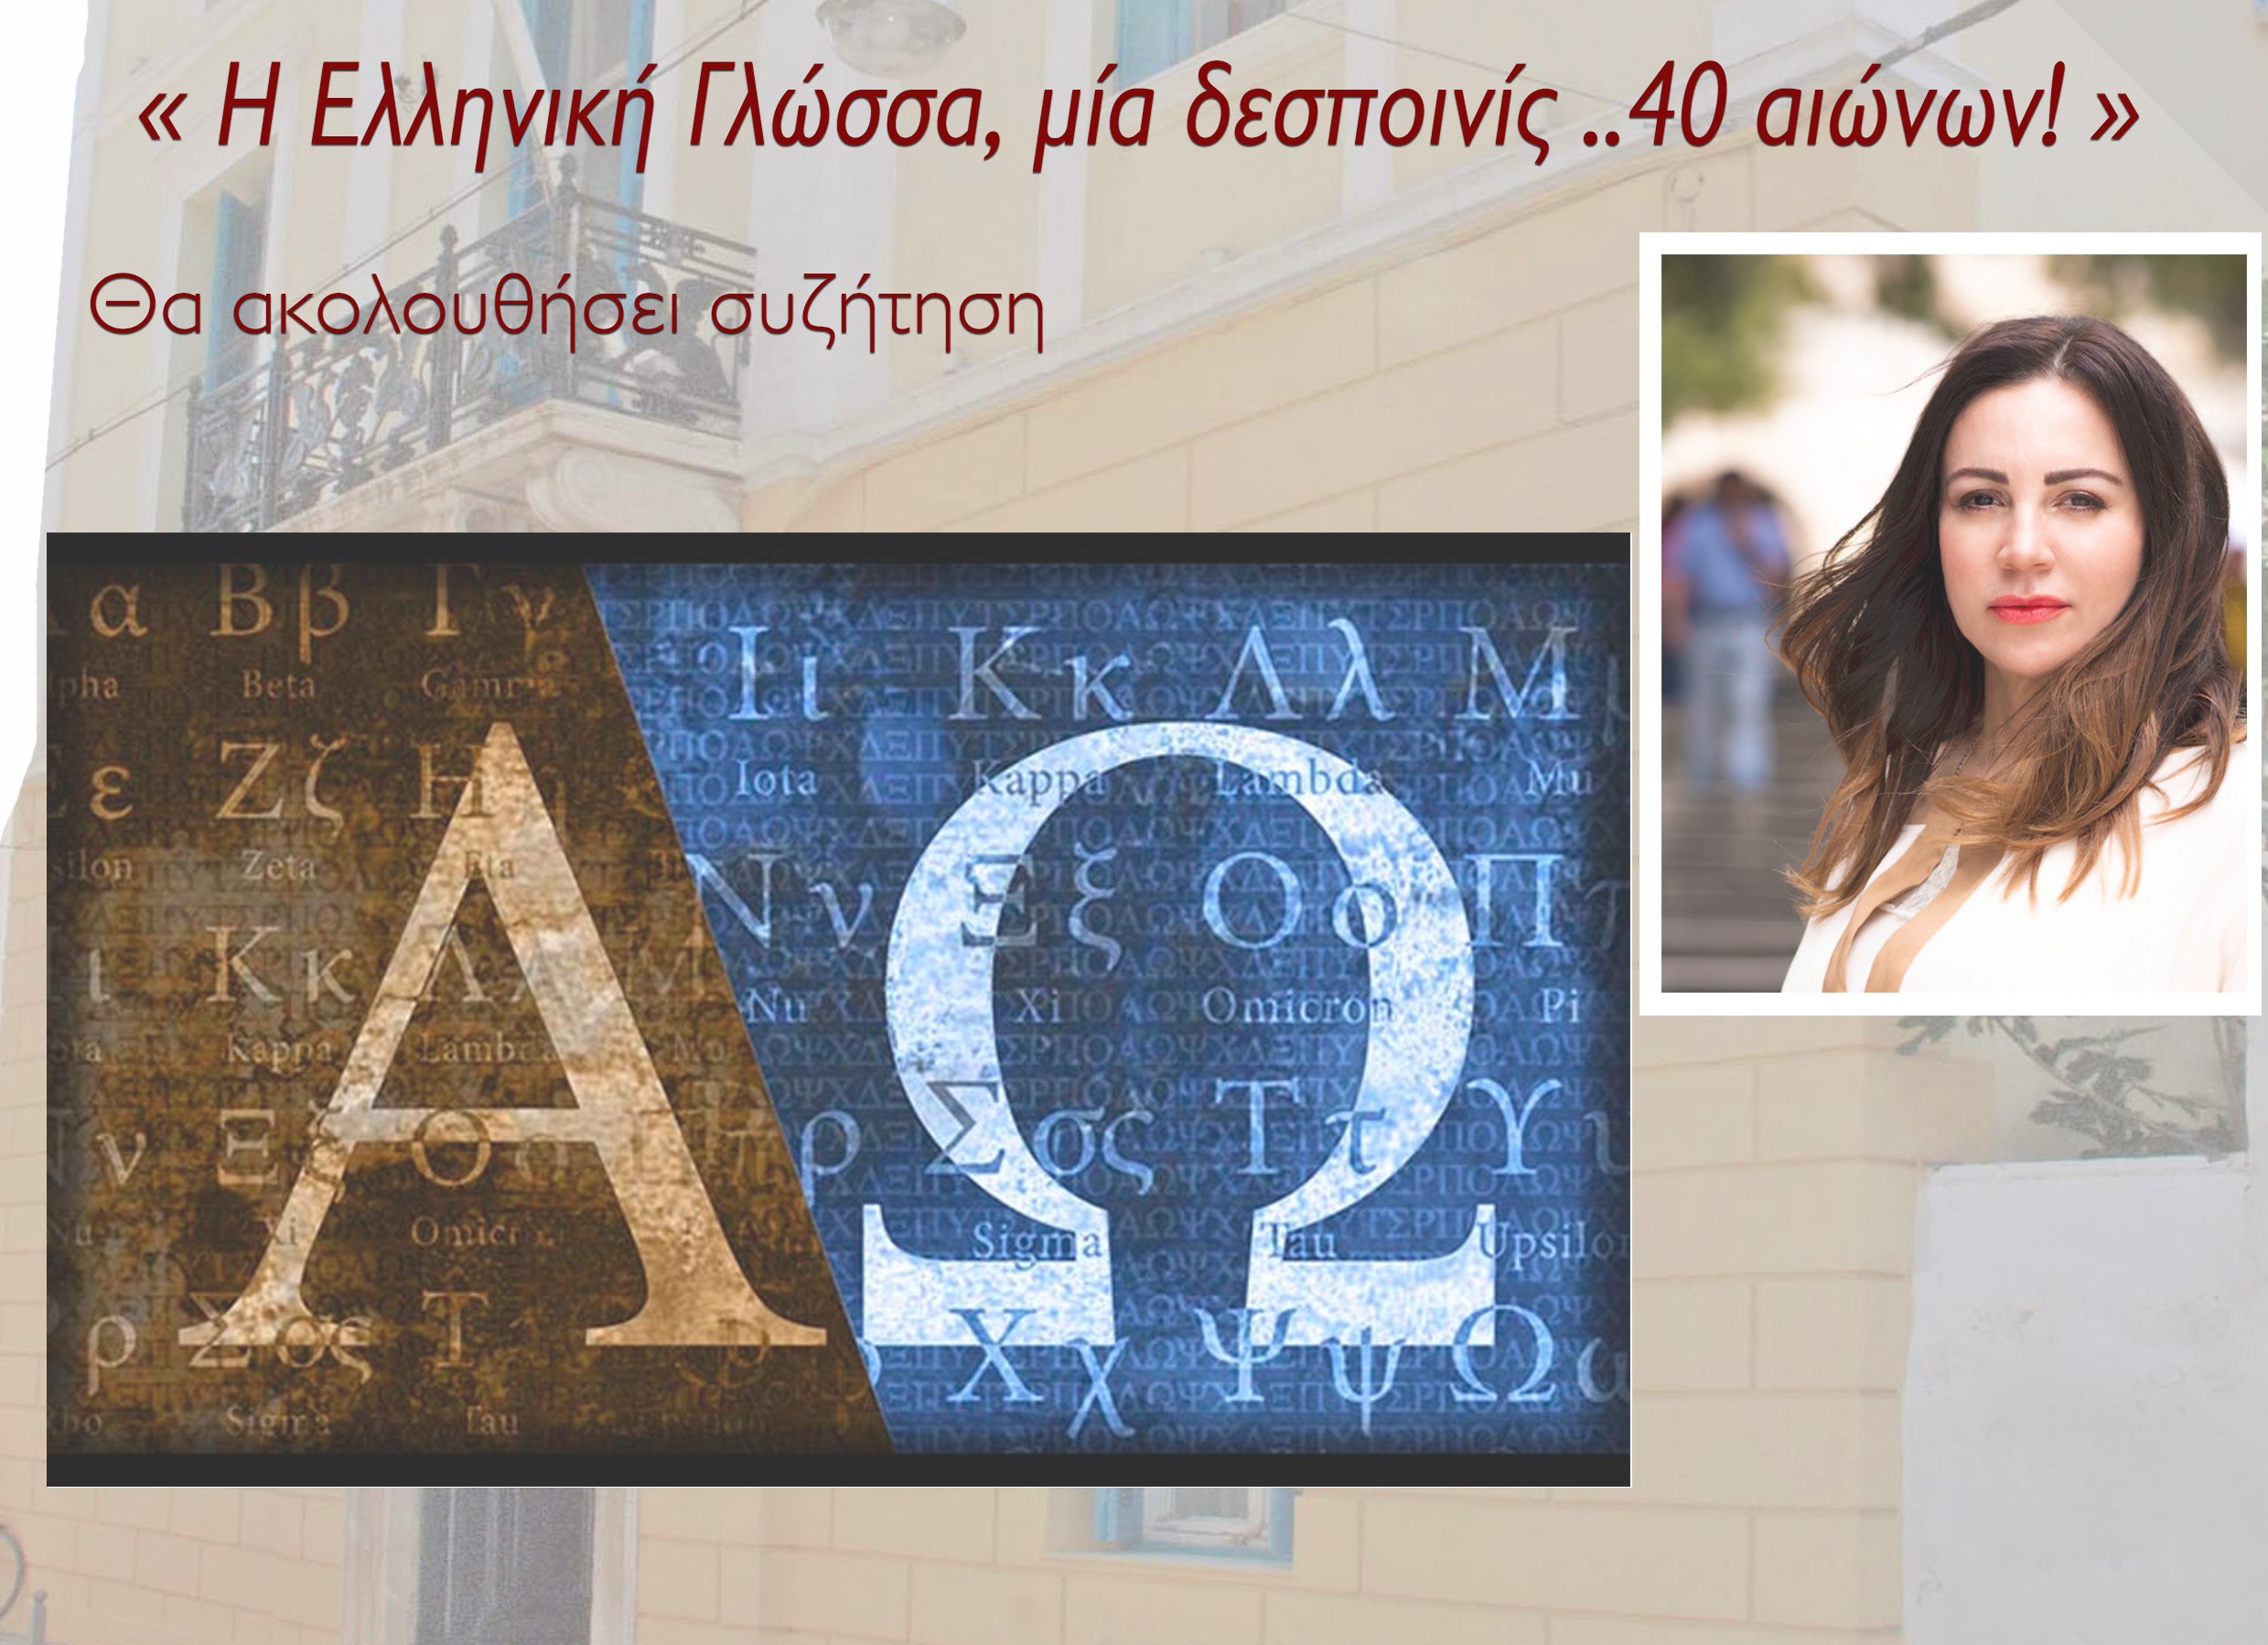 Άργος: Εκδήλωση με θέμα «Η Ελληνική Γλώσσα, μία δεσποινίς…40 αιώνων!»